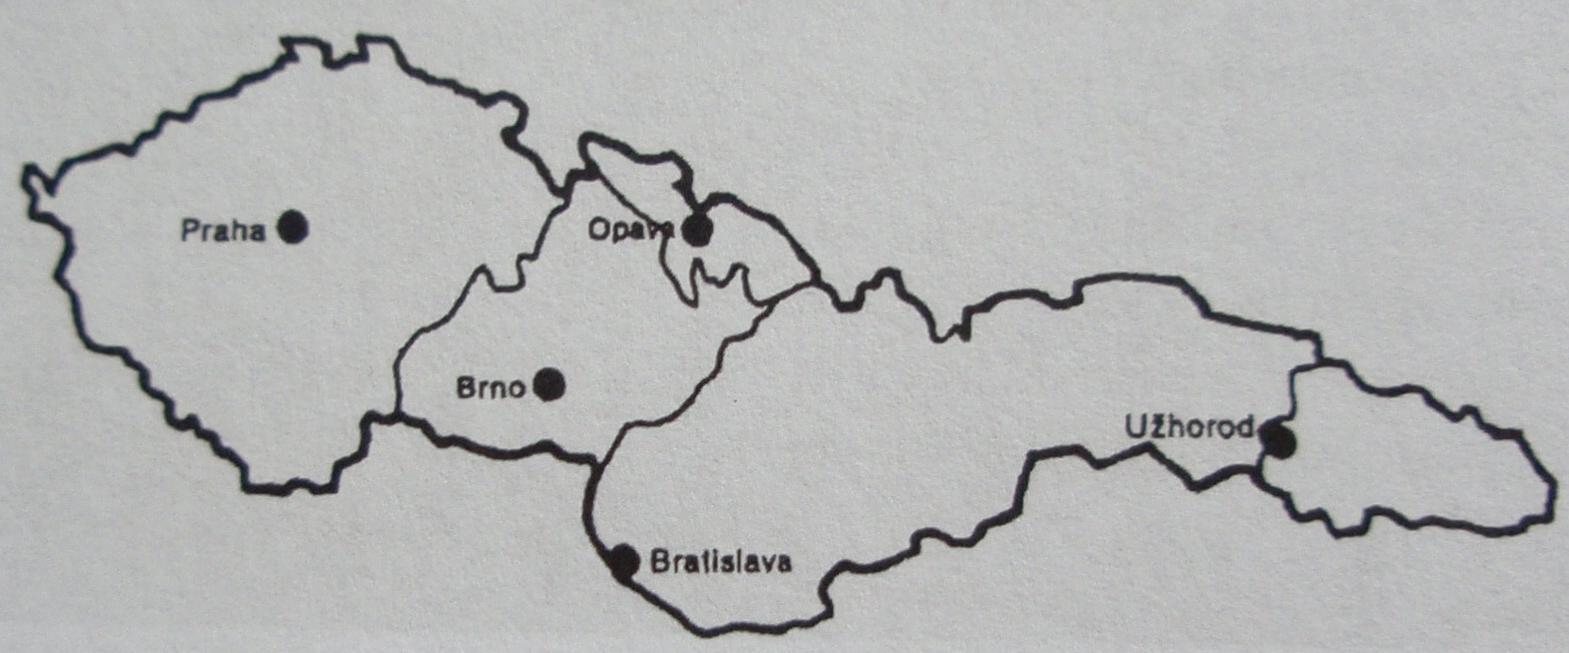 Správní rozdělení Československé republiky po roce 1918 - Čechy, Morava, Slezsko, Slovensko, Podkarpatská Rus